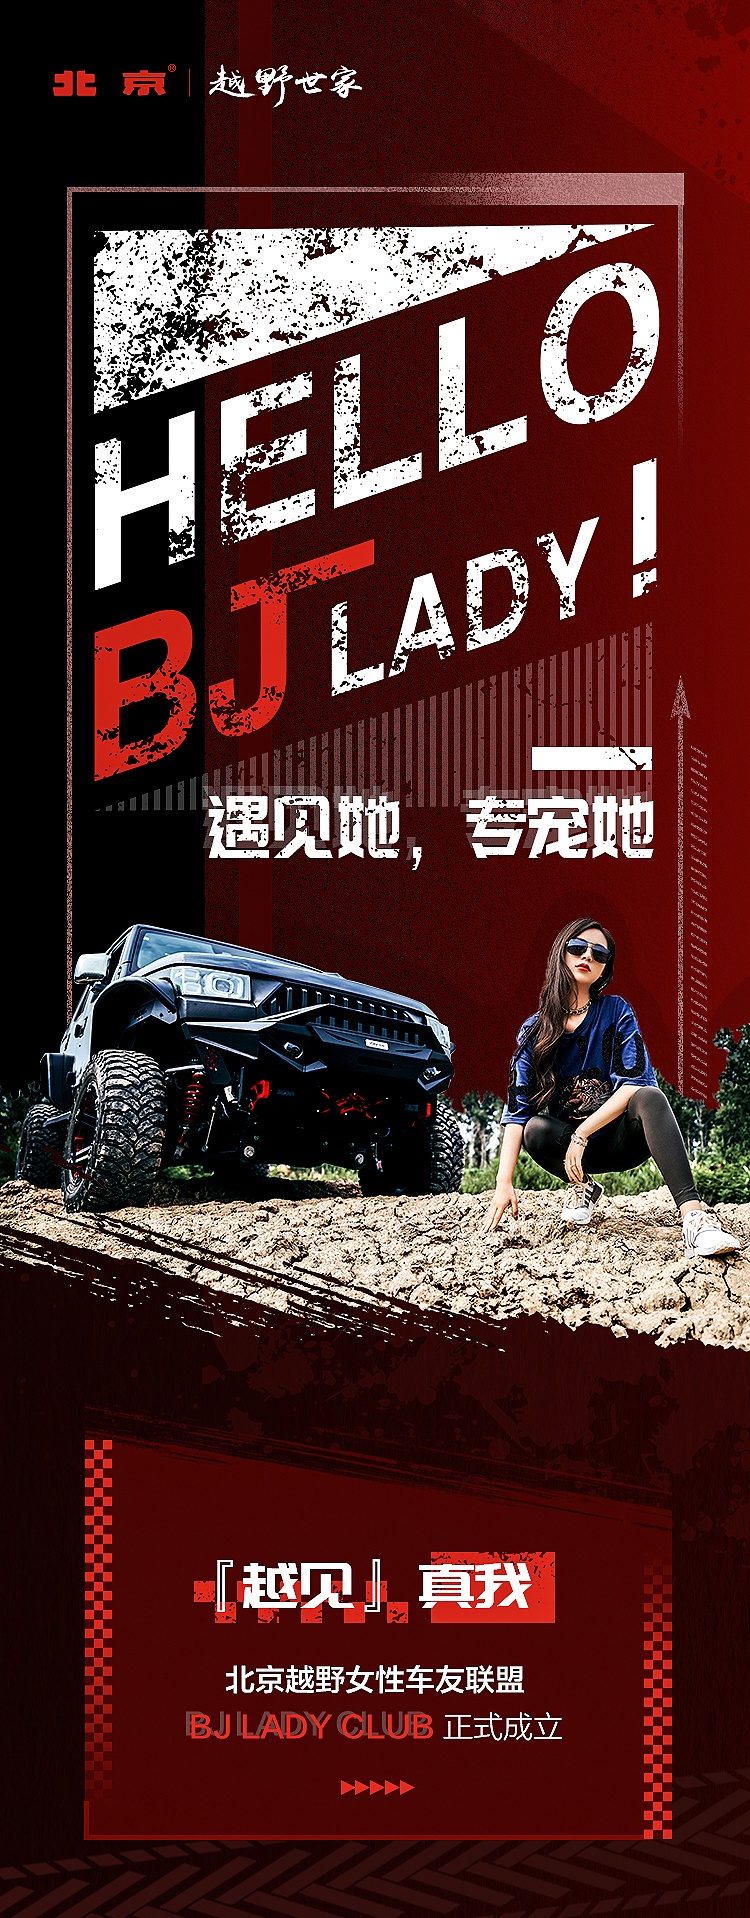 北京越野创建BJ LADY联盟，为女性车友提供专属服务